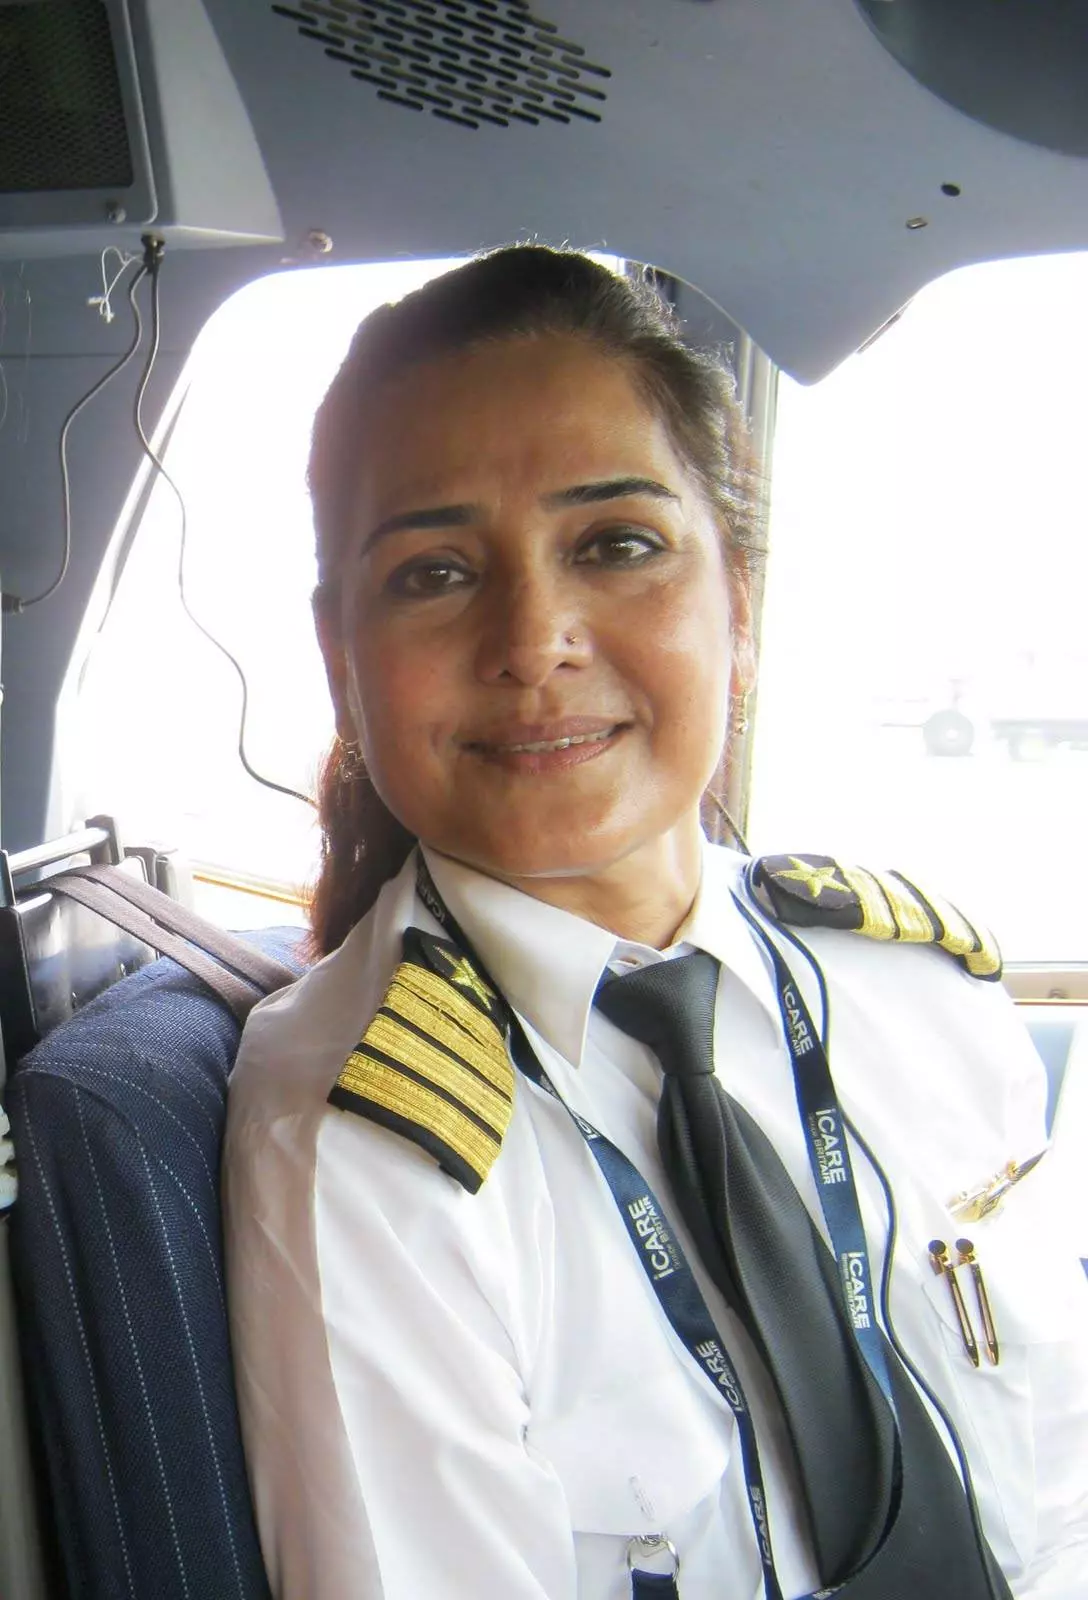 Не просто стать женщине пилотом на пассажирском лайнере